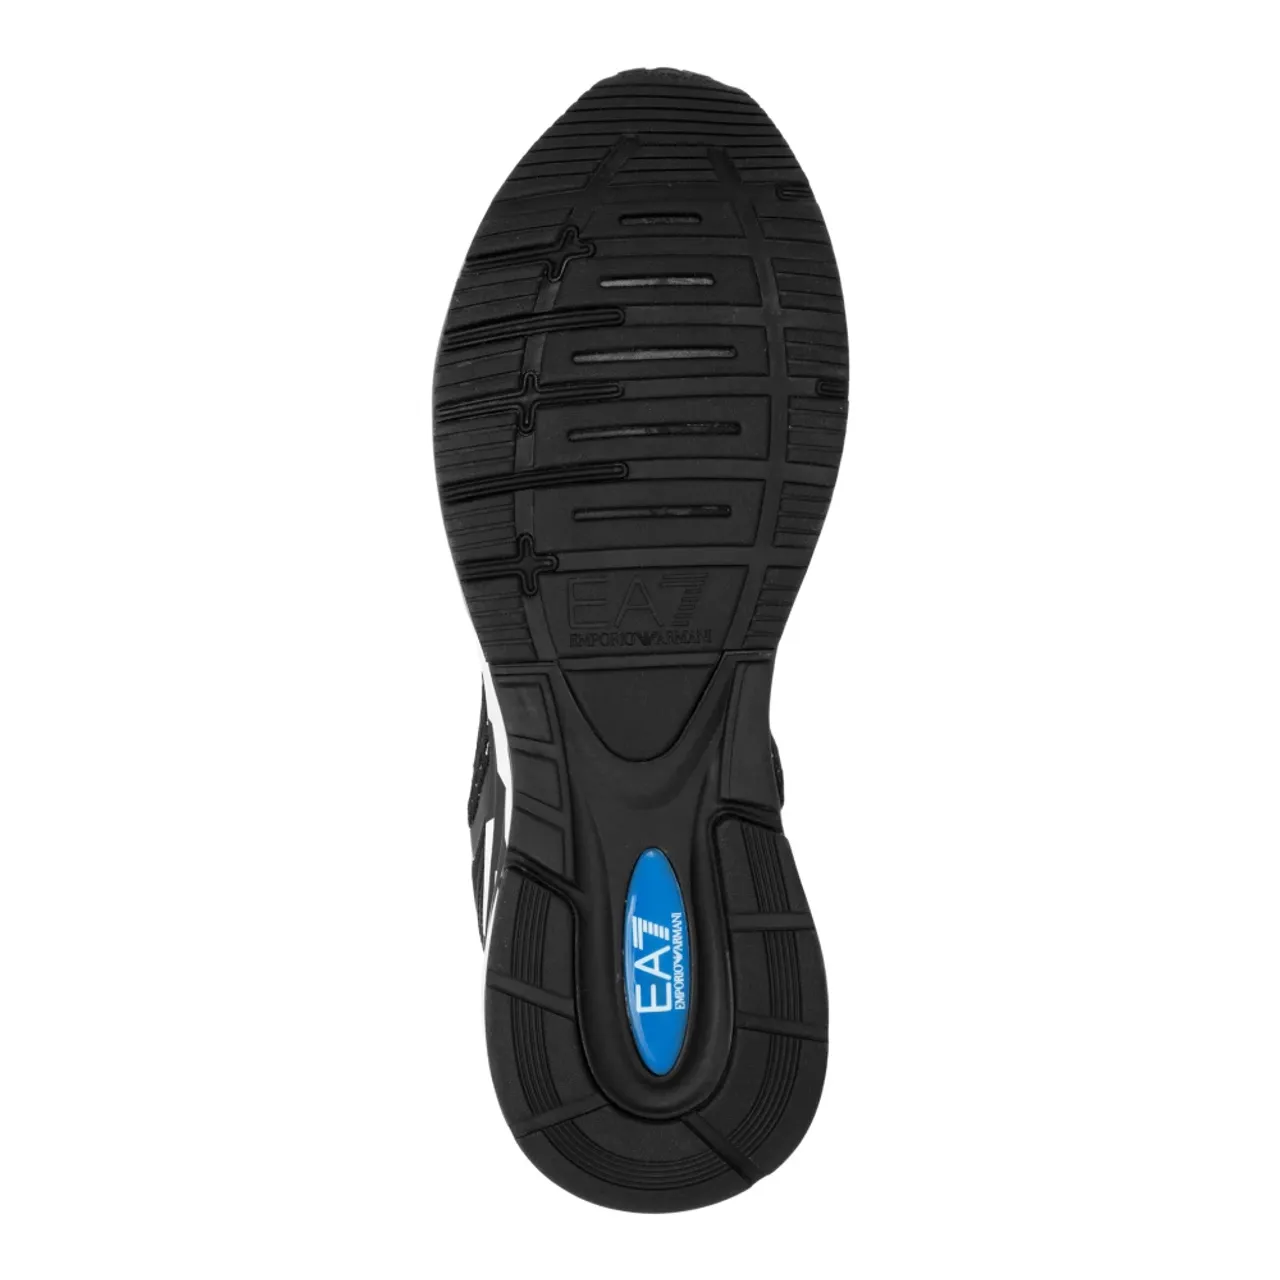 Emporio Armani EA7 , Crusher Distance Reflex Sneakers ,Black male, Sizes: